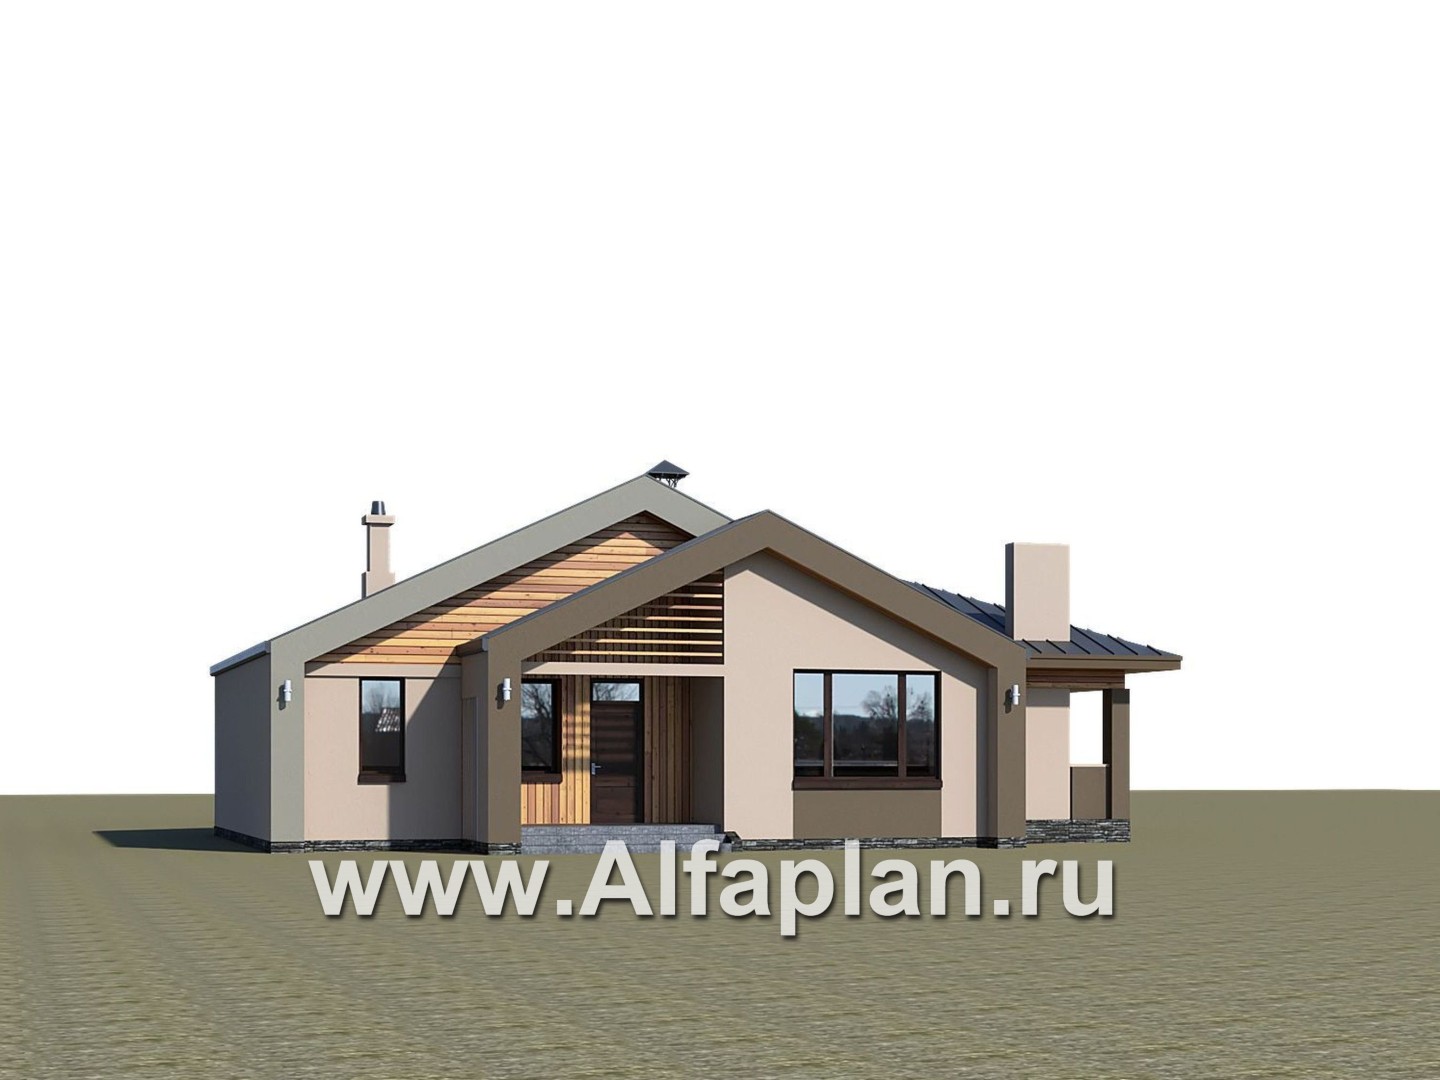 Проекты домов Альфаплан - «Аркада» - проект одноэтажного дома, современный стиль, барнхаус, с фальцевой кровлей - дополнительное изображение №1